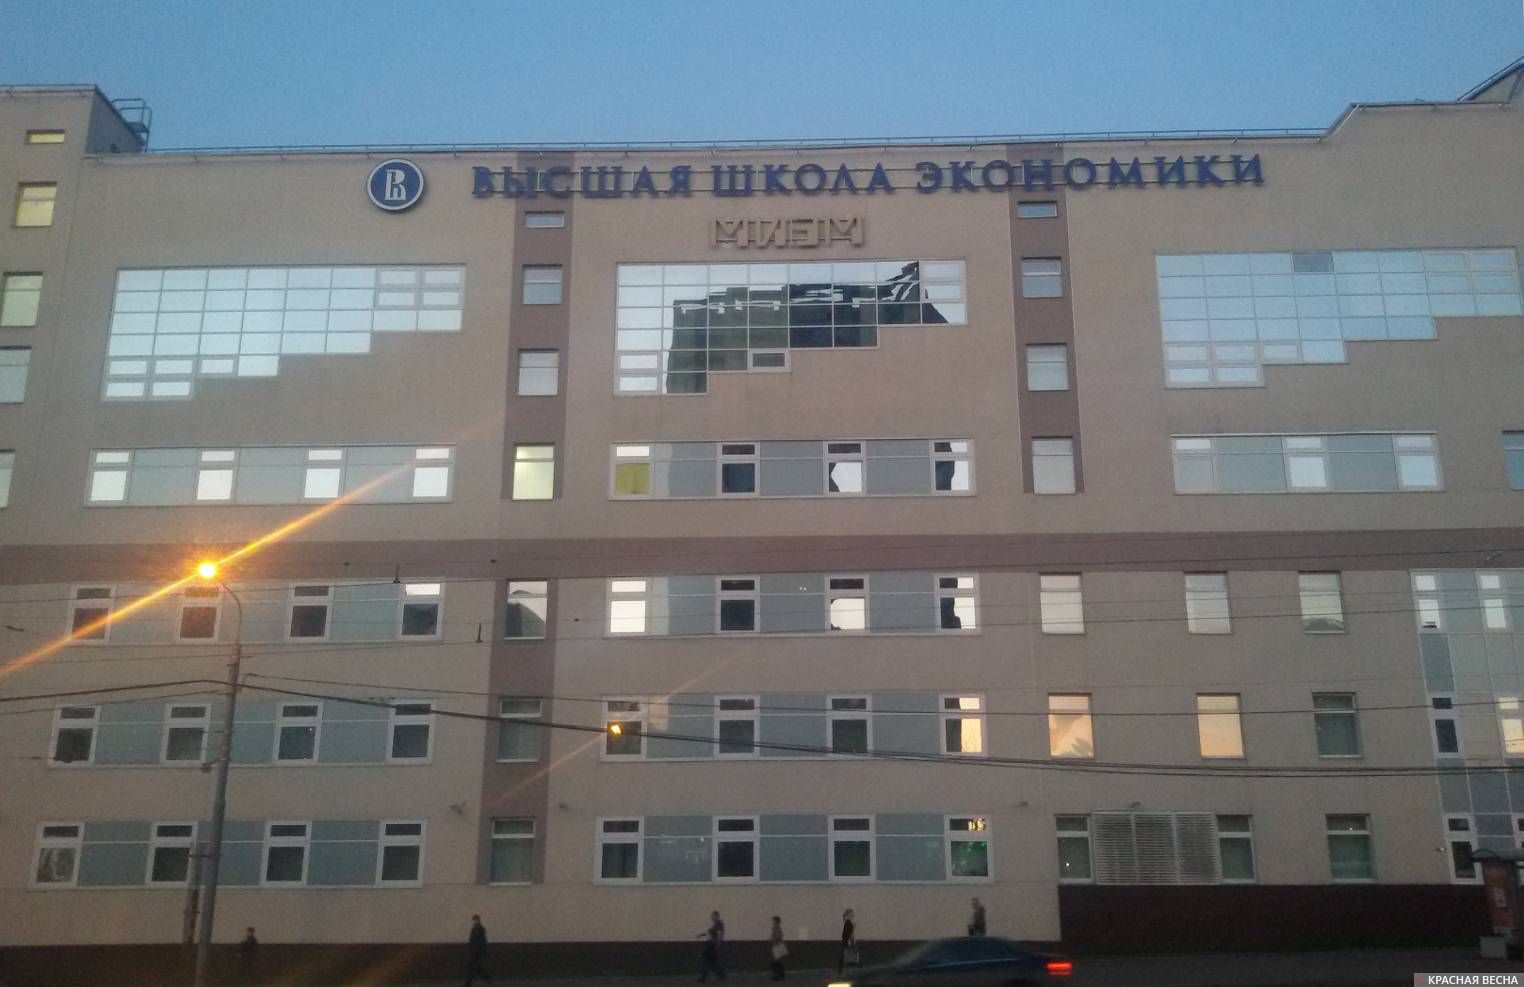 Высшая школа экономики. Москва